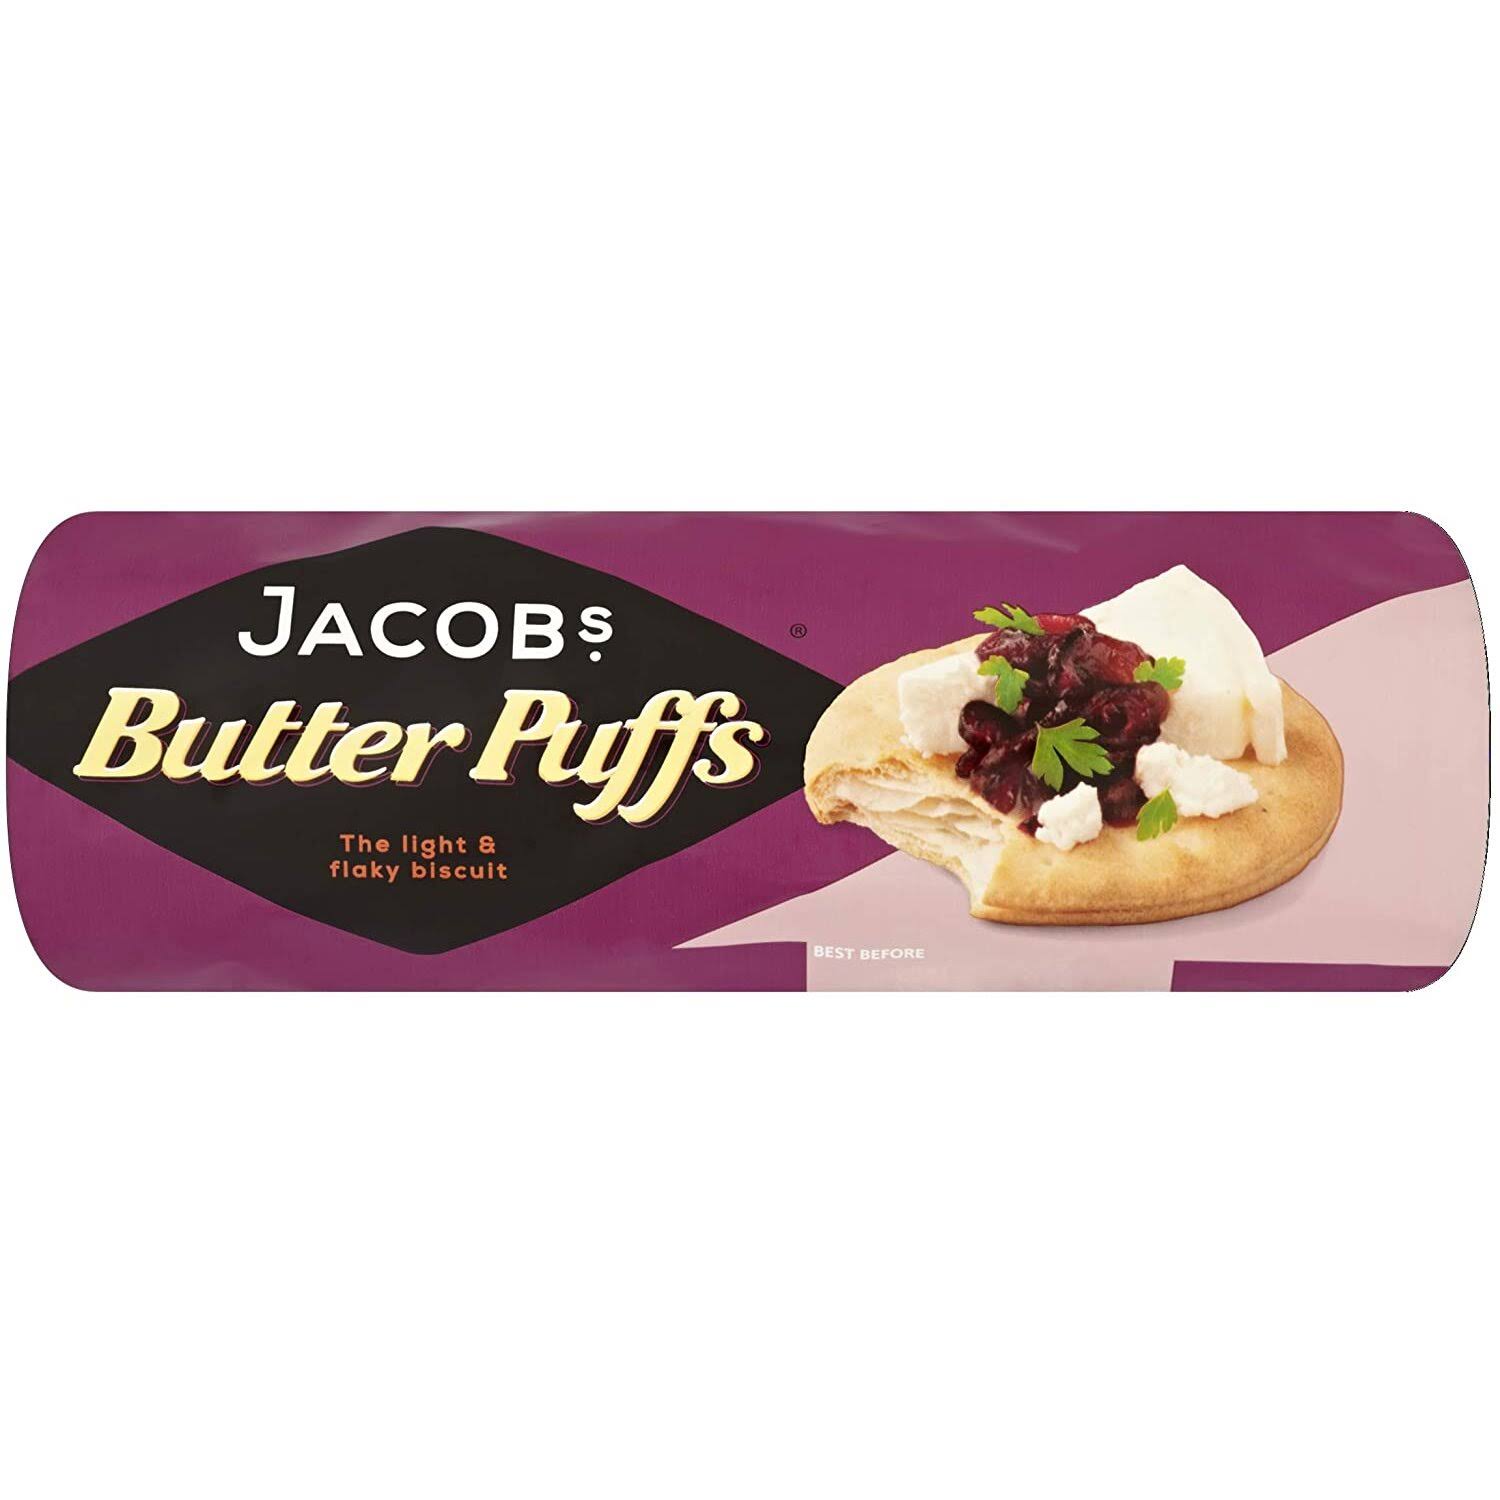 Jacobs Butter Puffs 200g